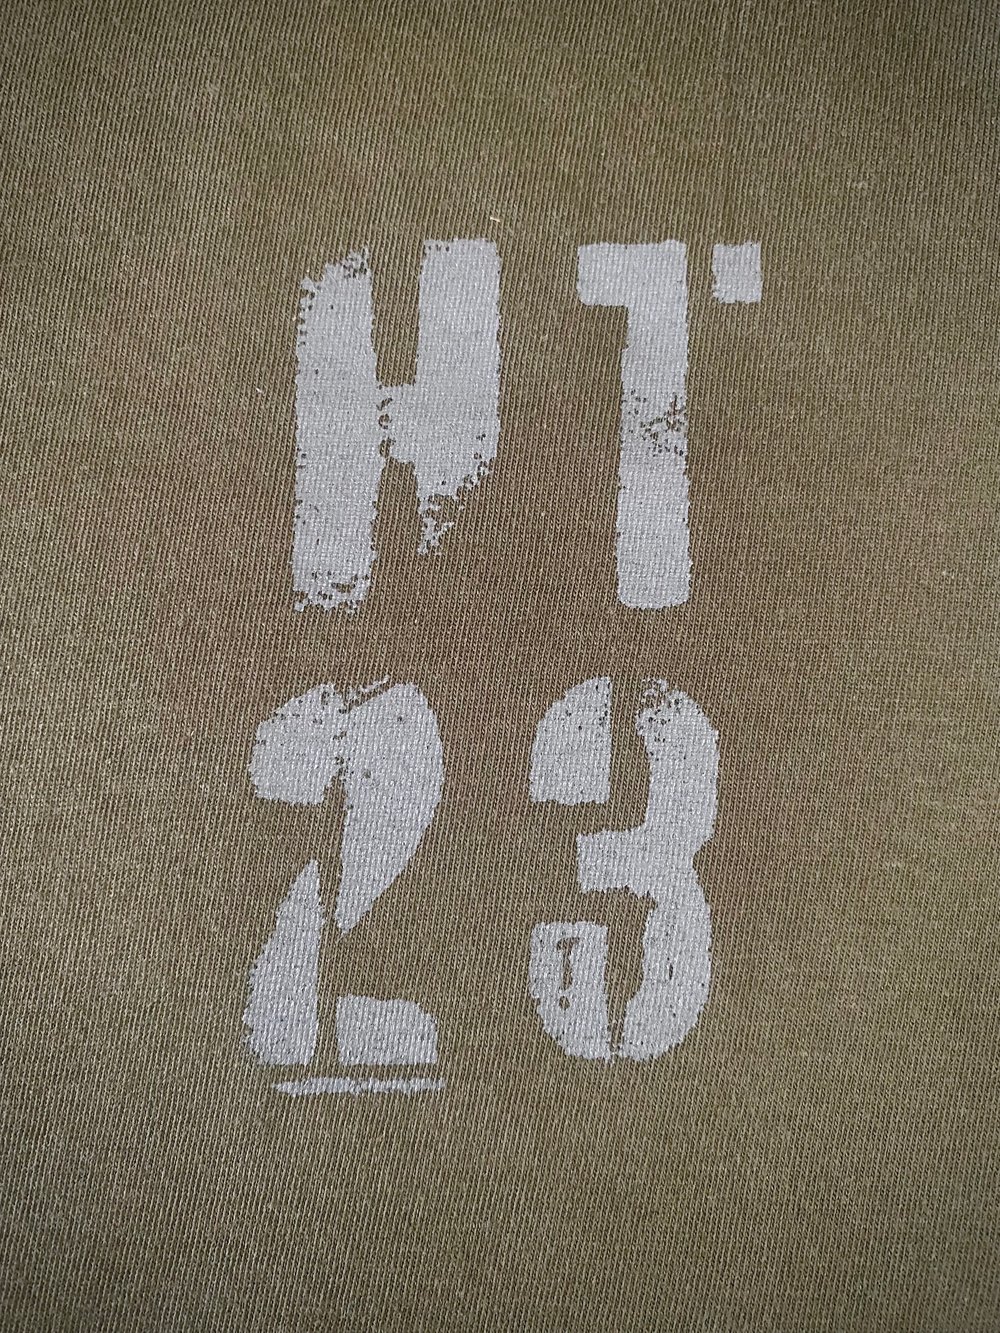 HT23 'INTERCEPTOR' Logo T Shirt Khaki 